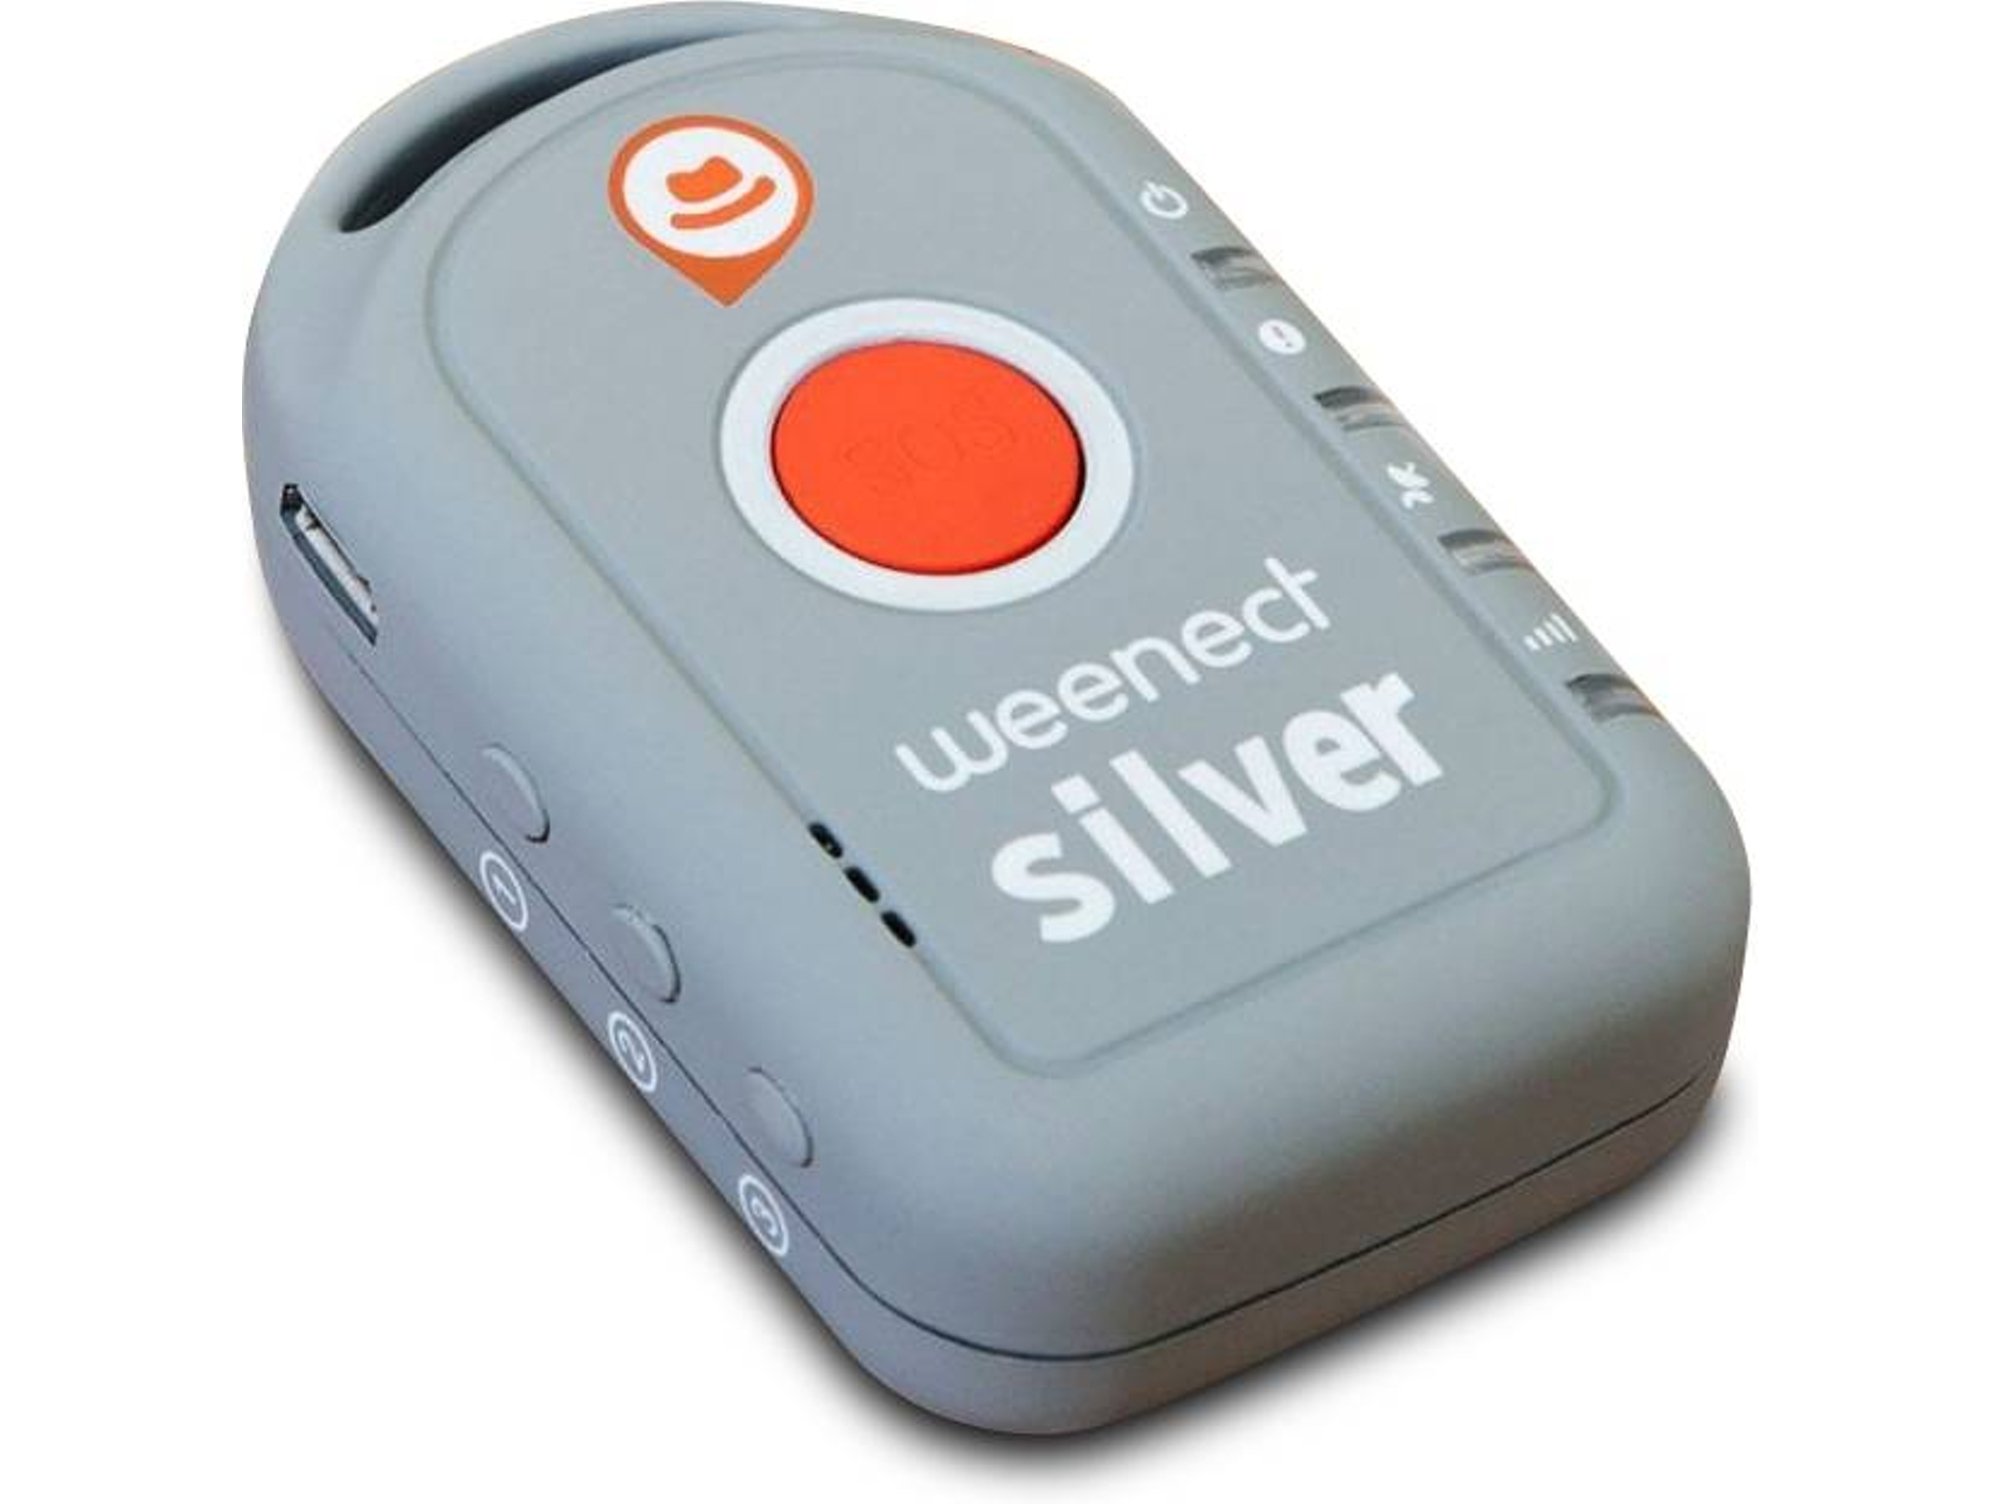 Weenect Silver Localizador Gps Para Adultos Y Ancianos con Ofertas